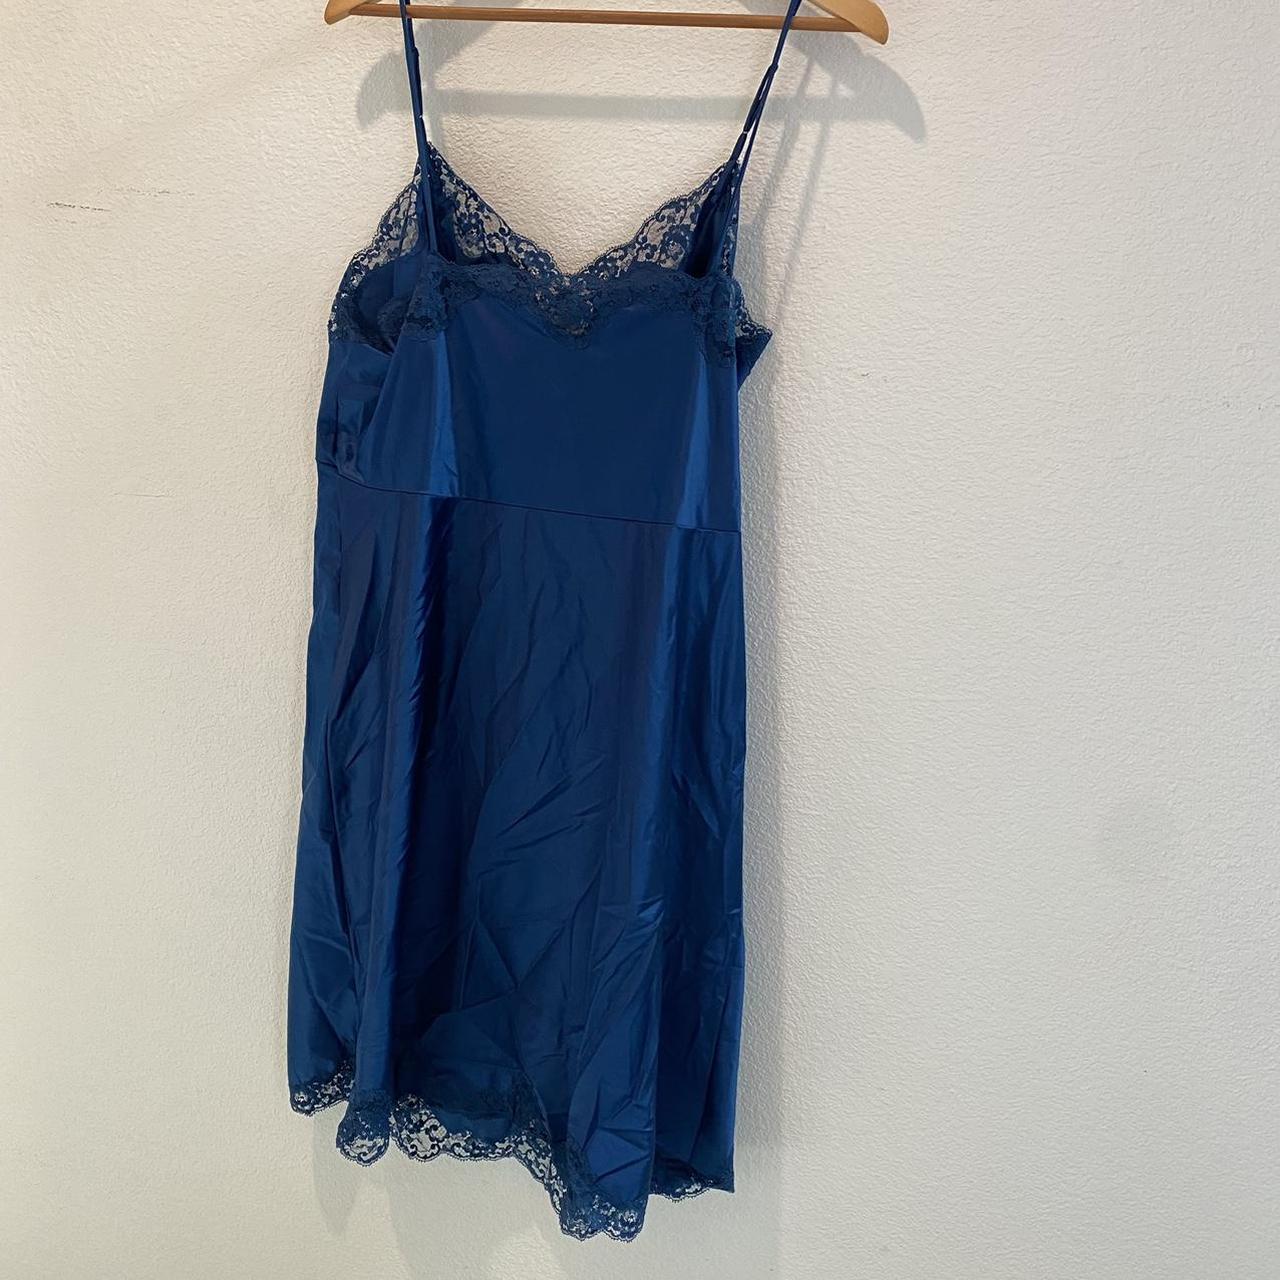 Blue Lace Slip Dress Size 42 #cottage #fairy... - Depop